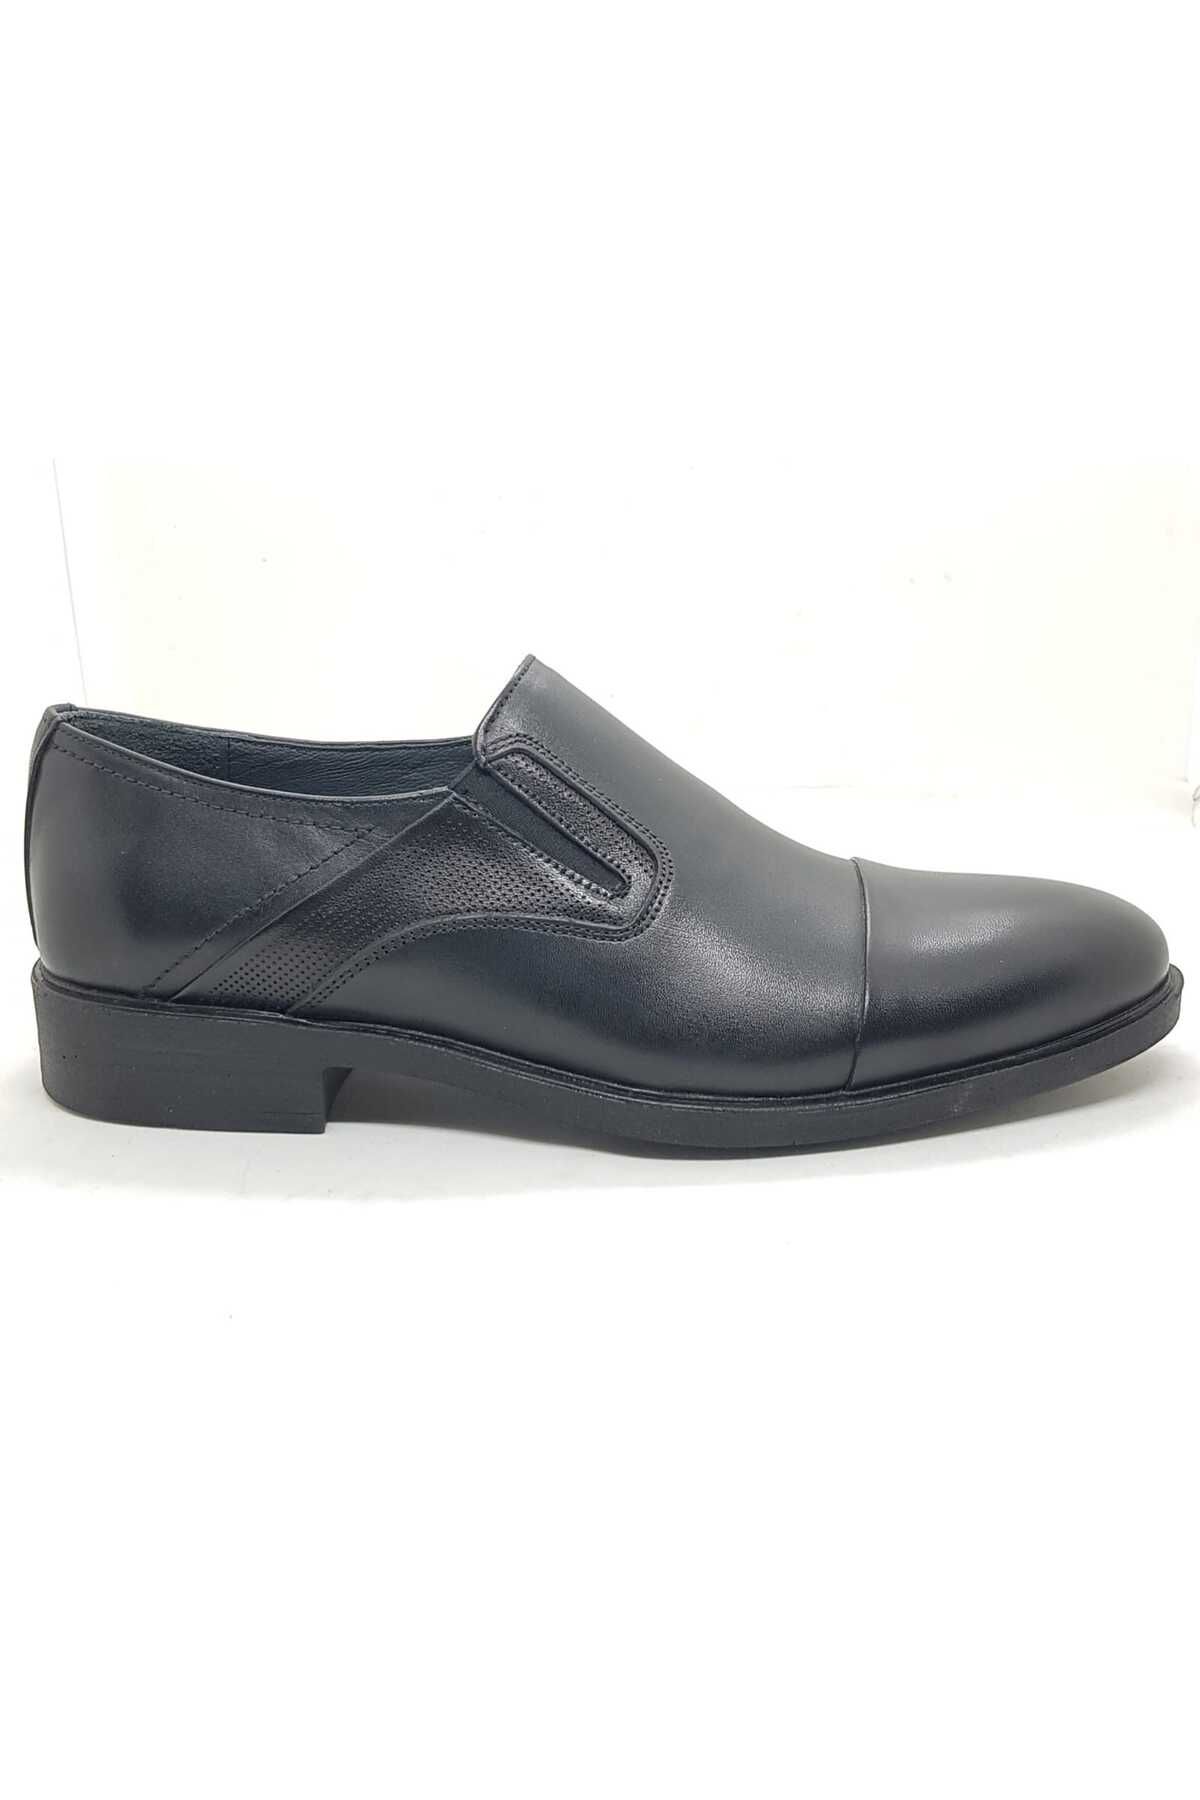 Neco siyah bağcıksız klasik ayakkabı kauçuk taban hakiki deri